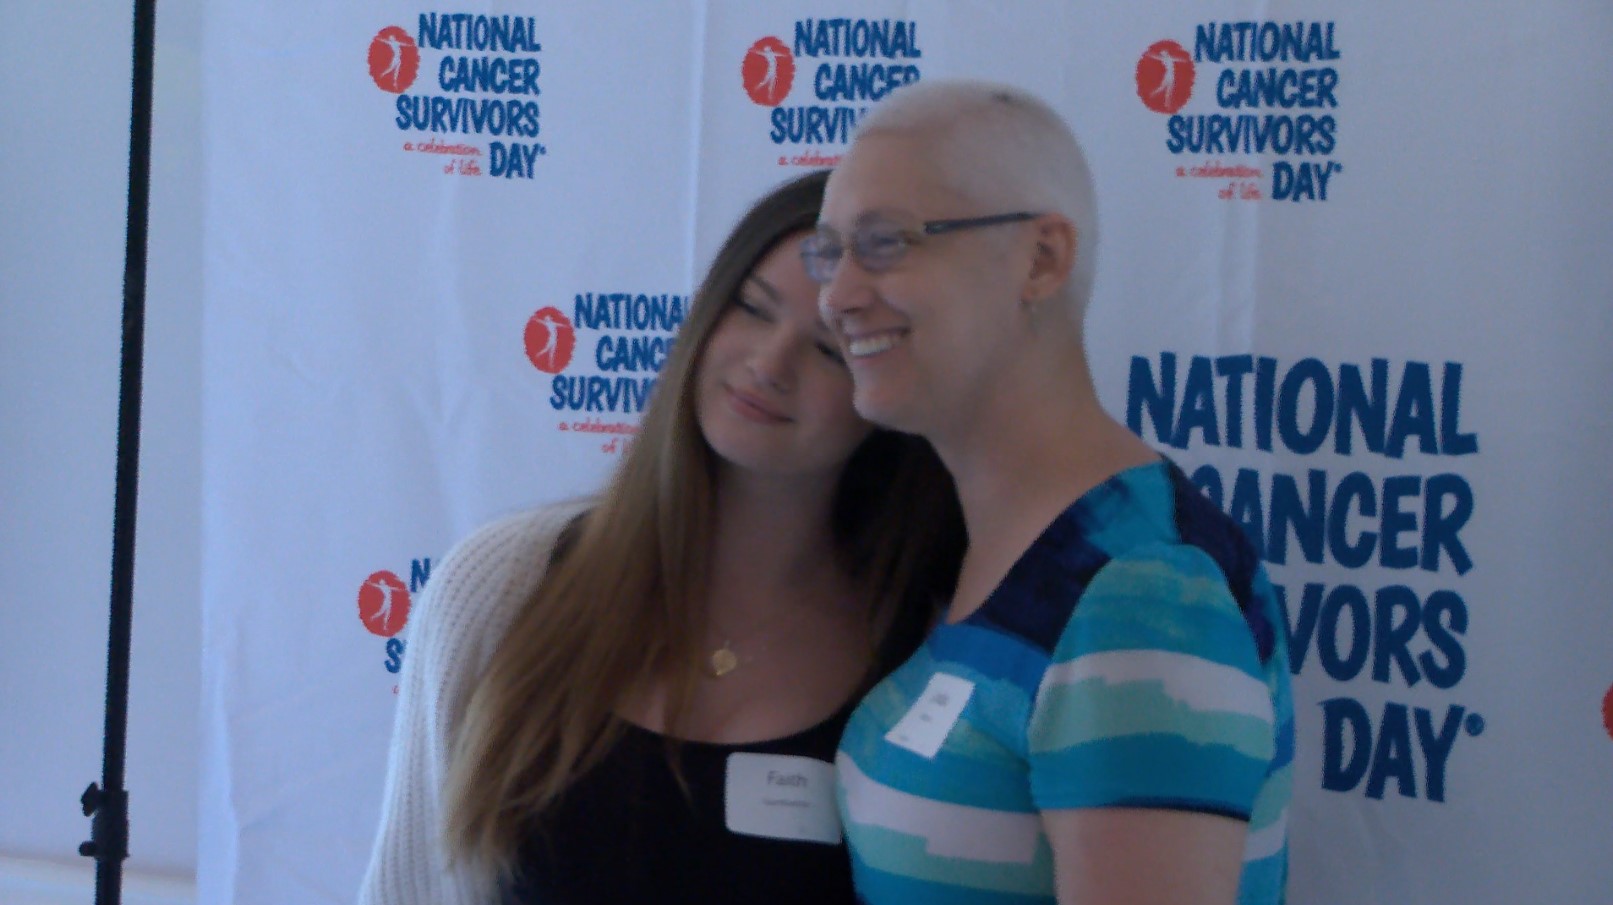 Life After Cancer, National Cancer Survivors Day